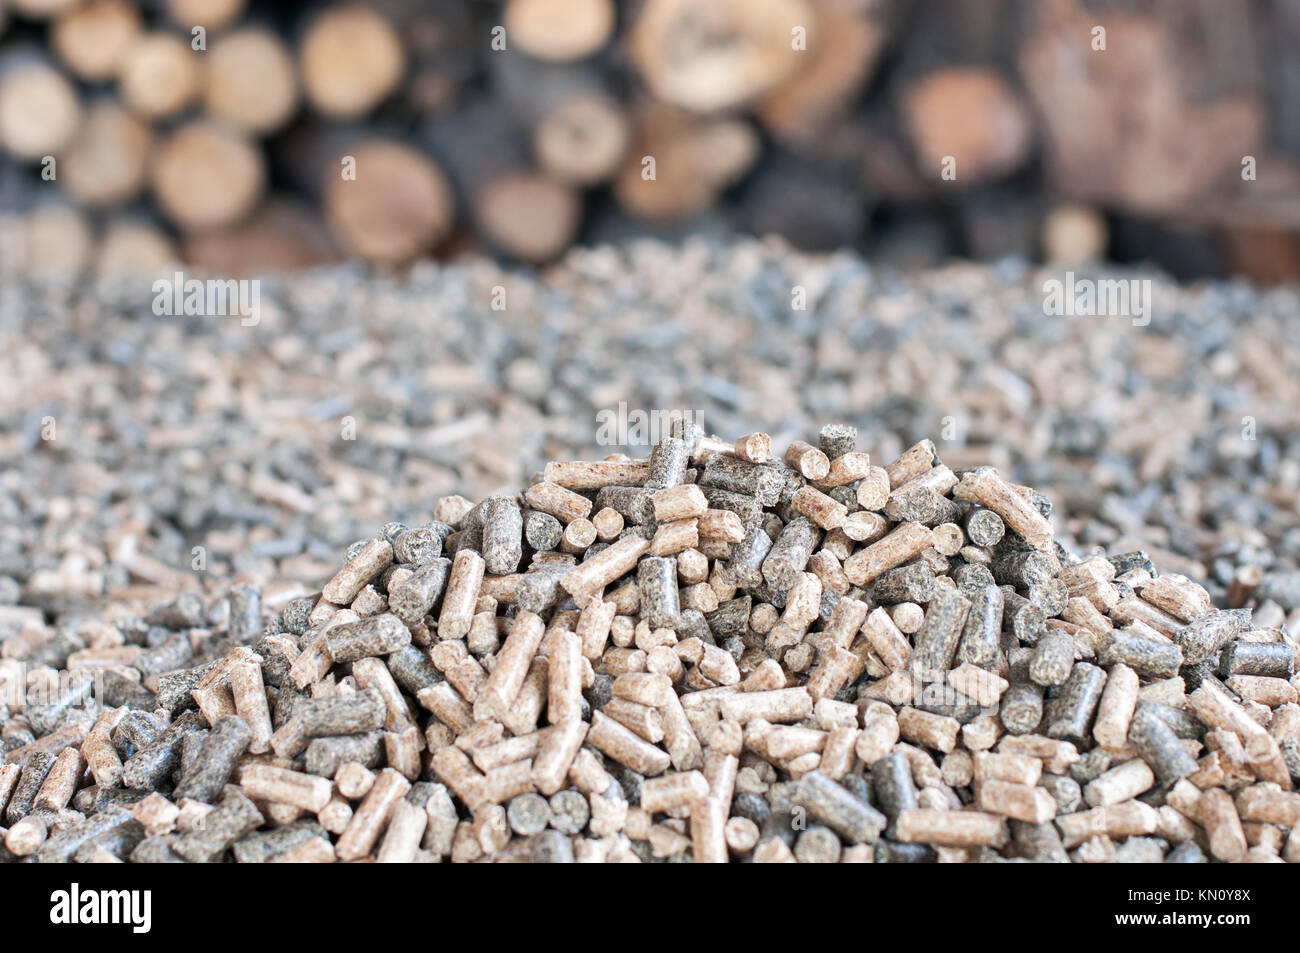 Stapel von zwei Arten Holz- pellets - Erneuerbare Energien Stockfoto